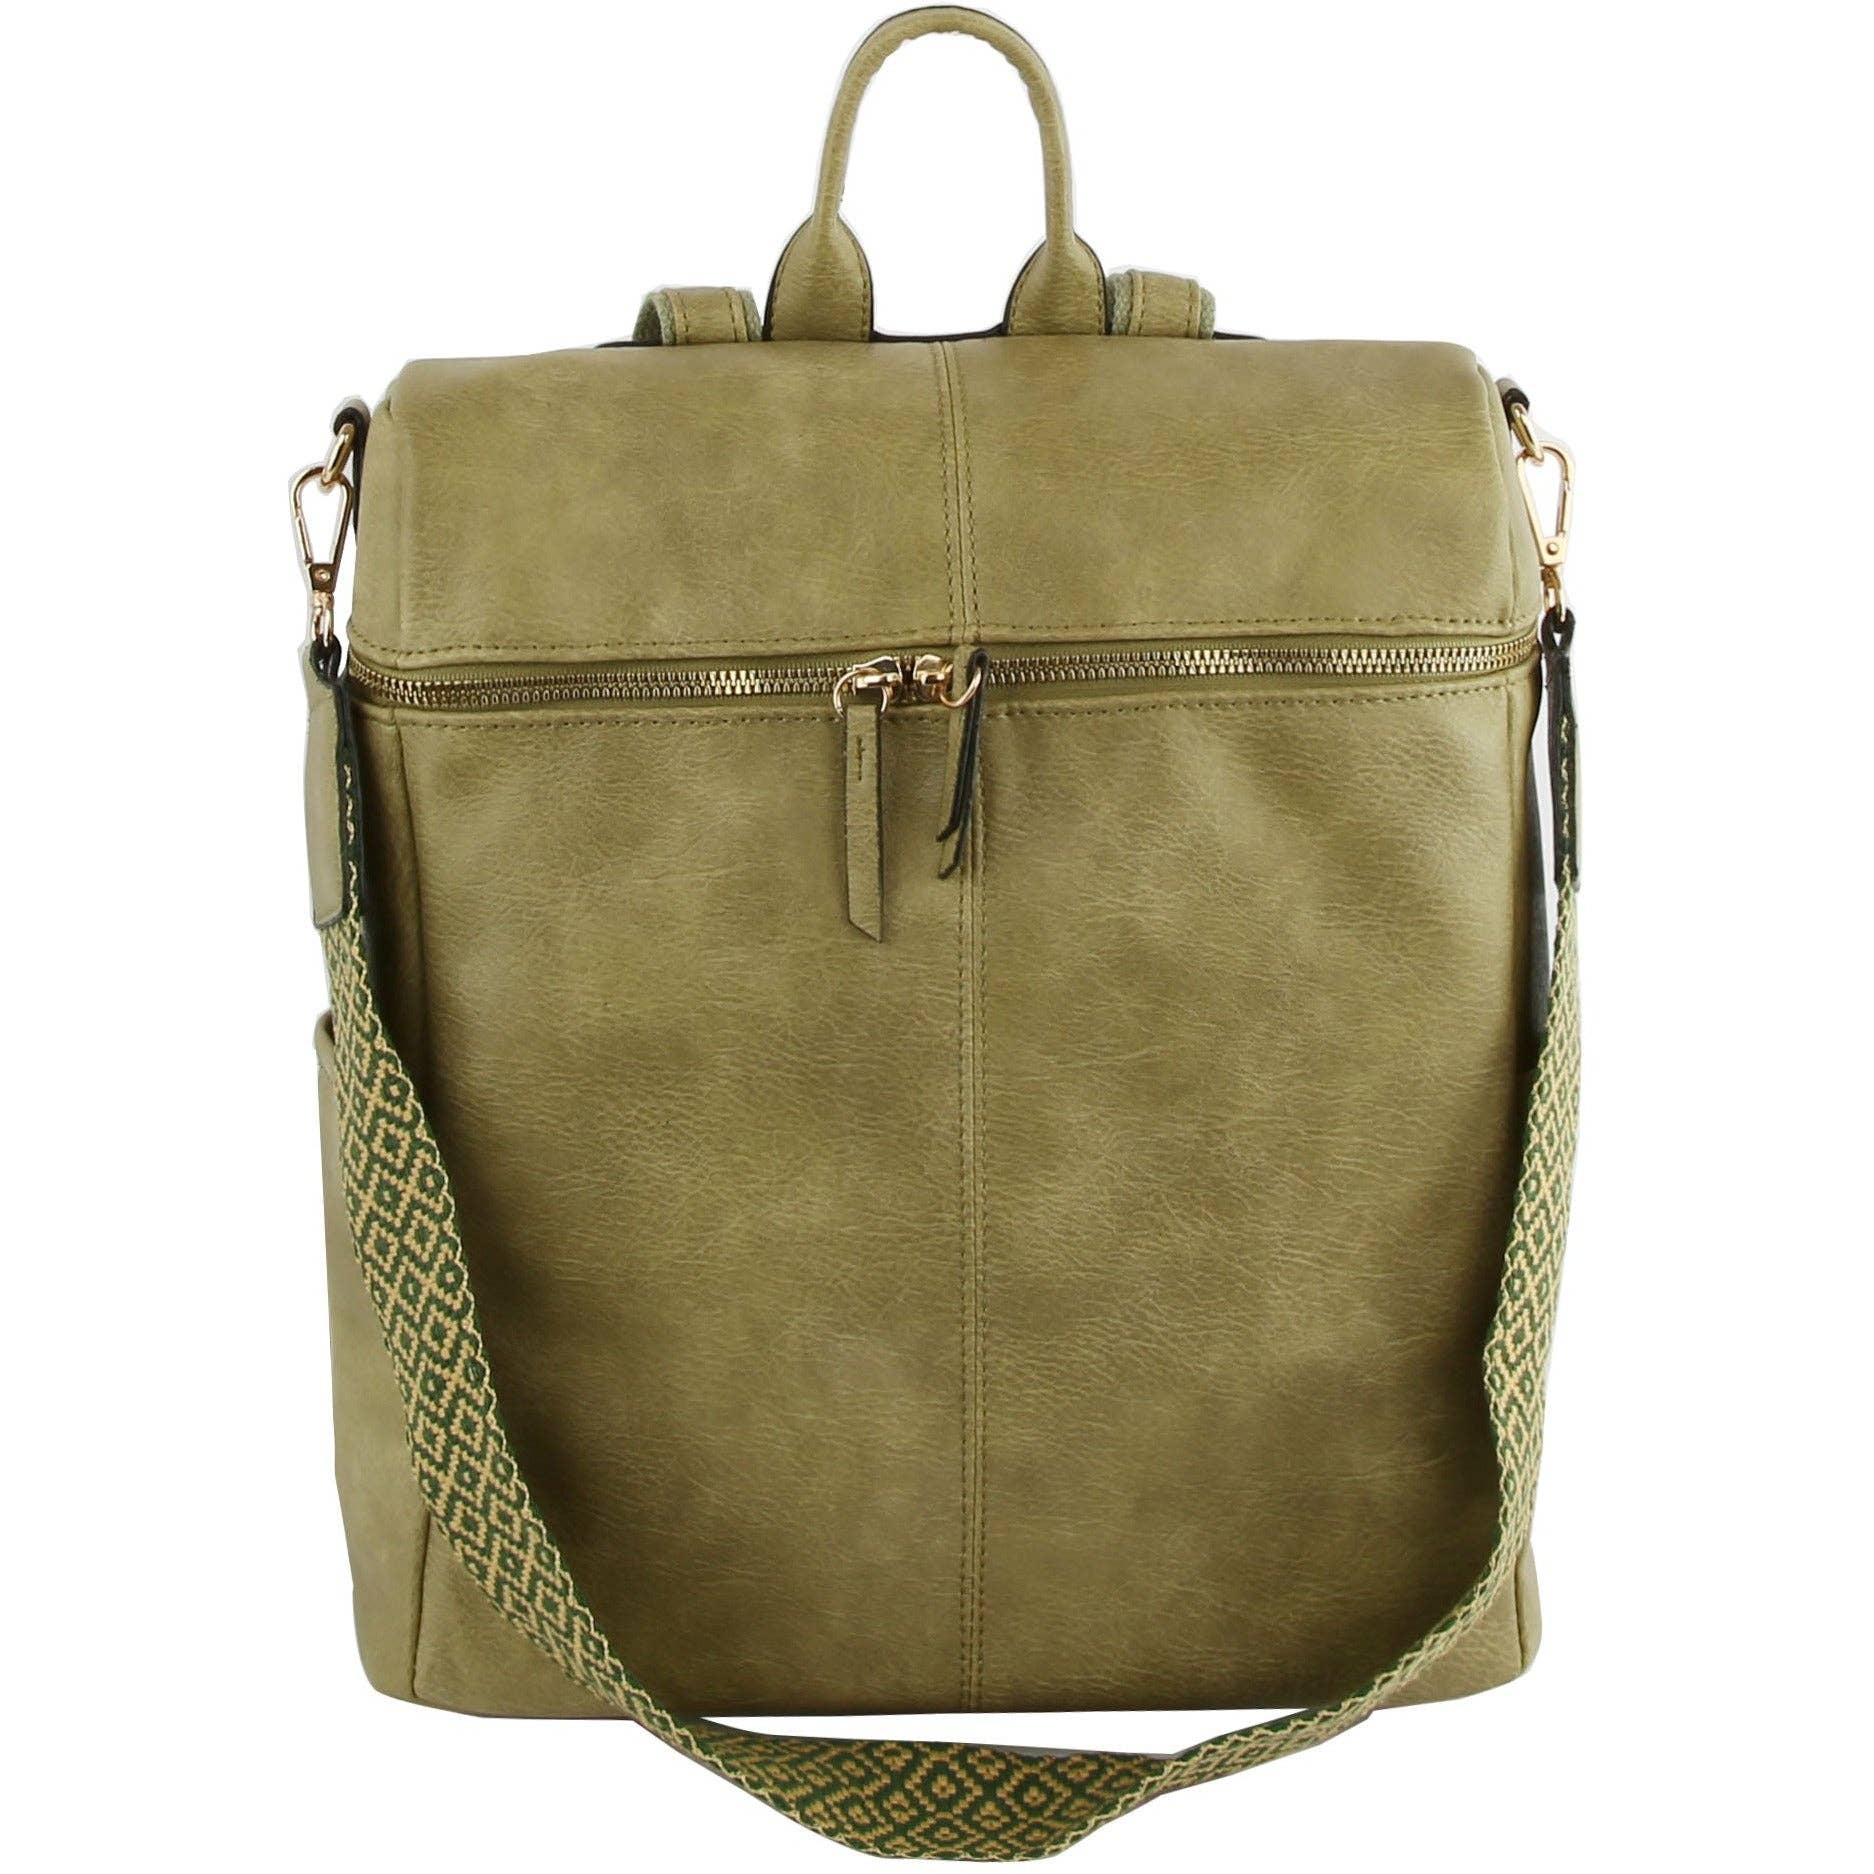 Backpack Purse Fashion Travel Shoulder Bag: Denim